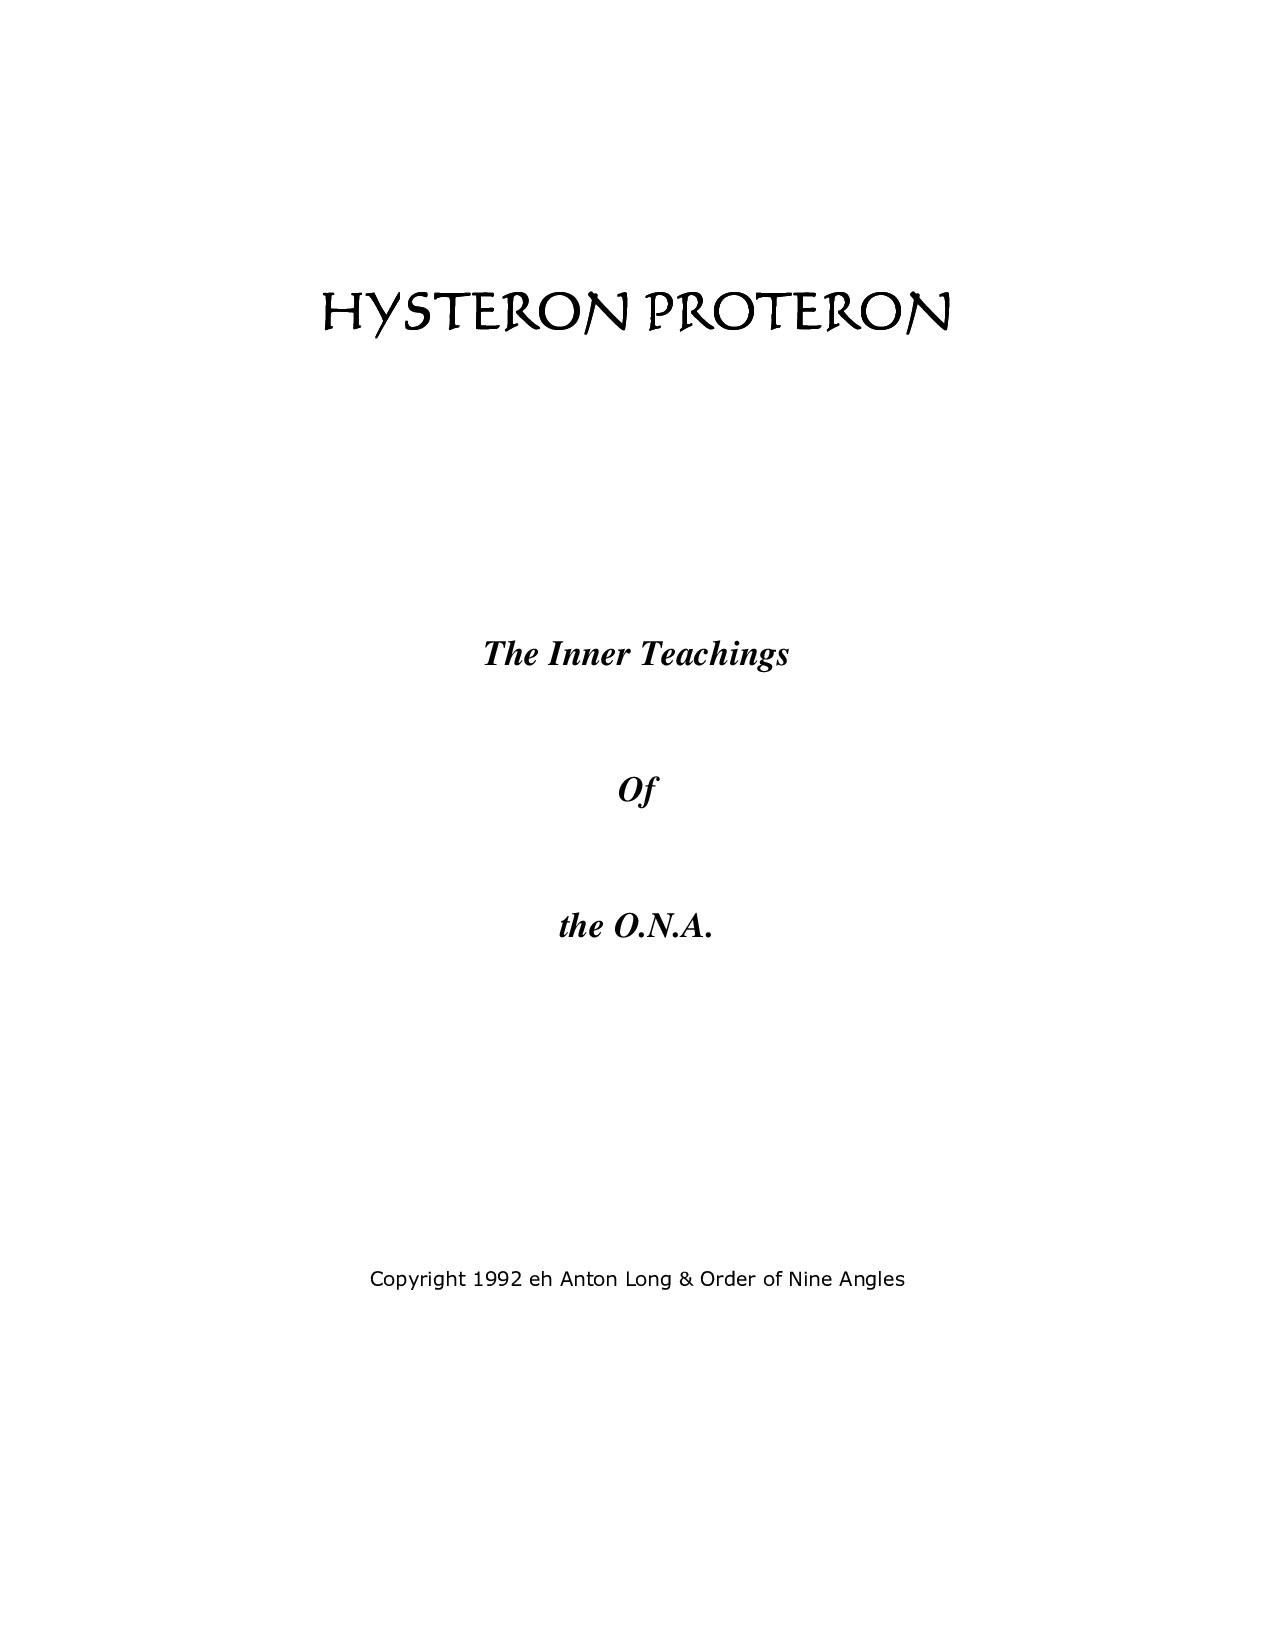 ONA Hysteron Proteron